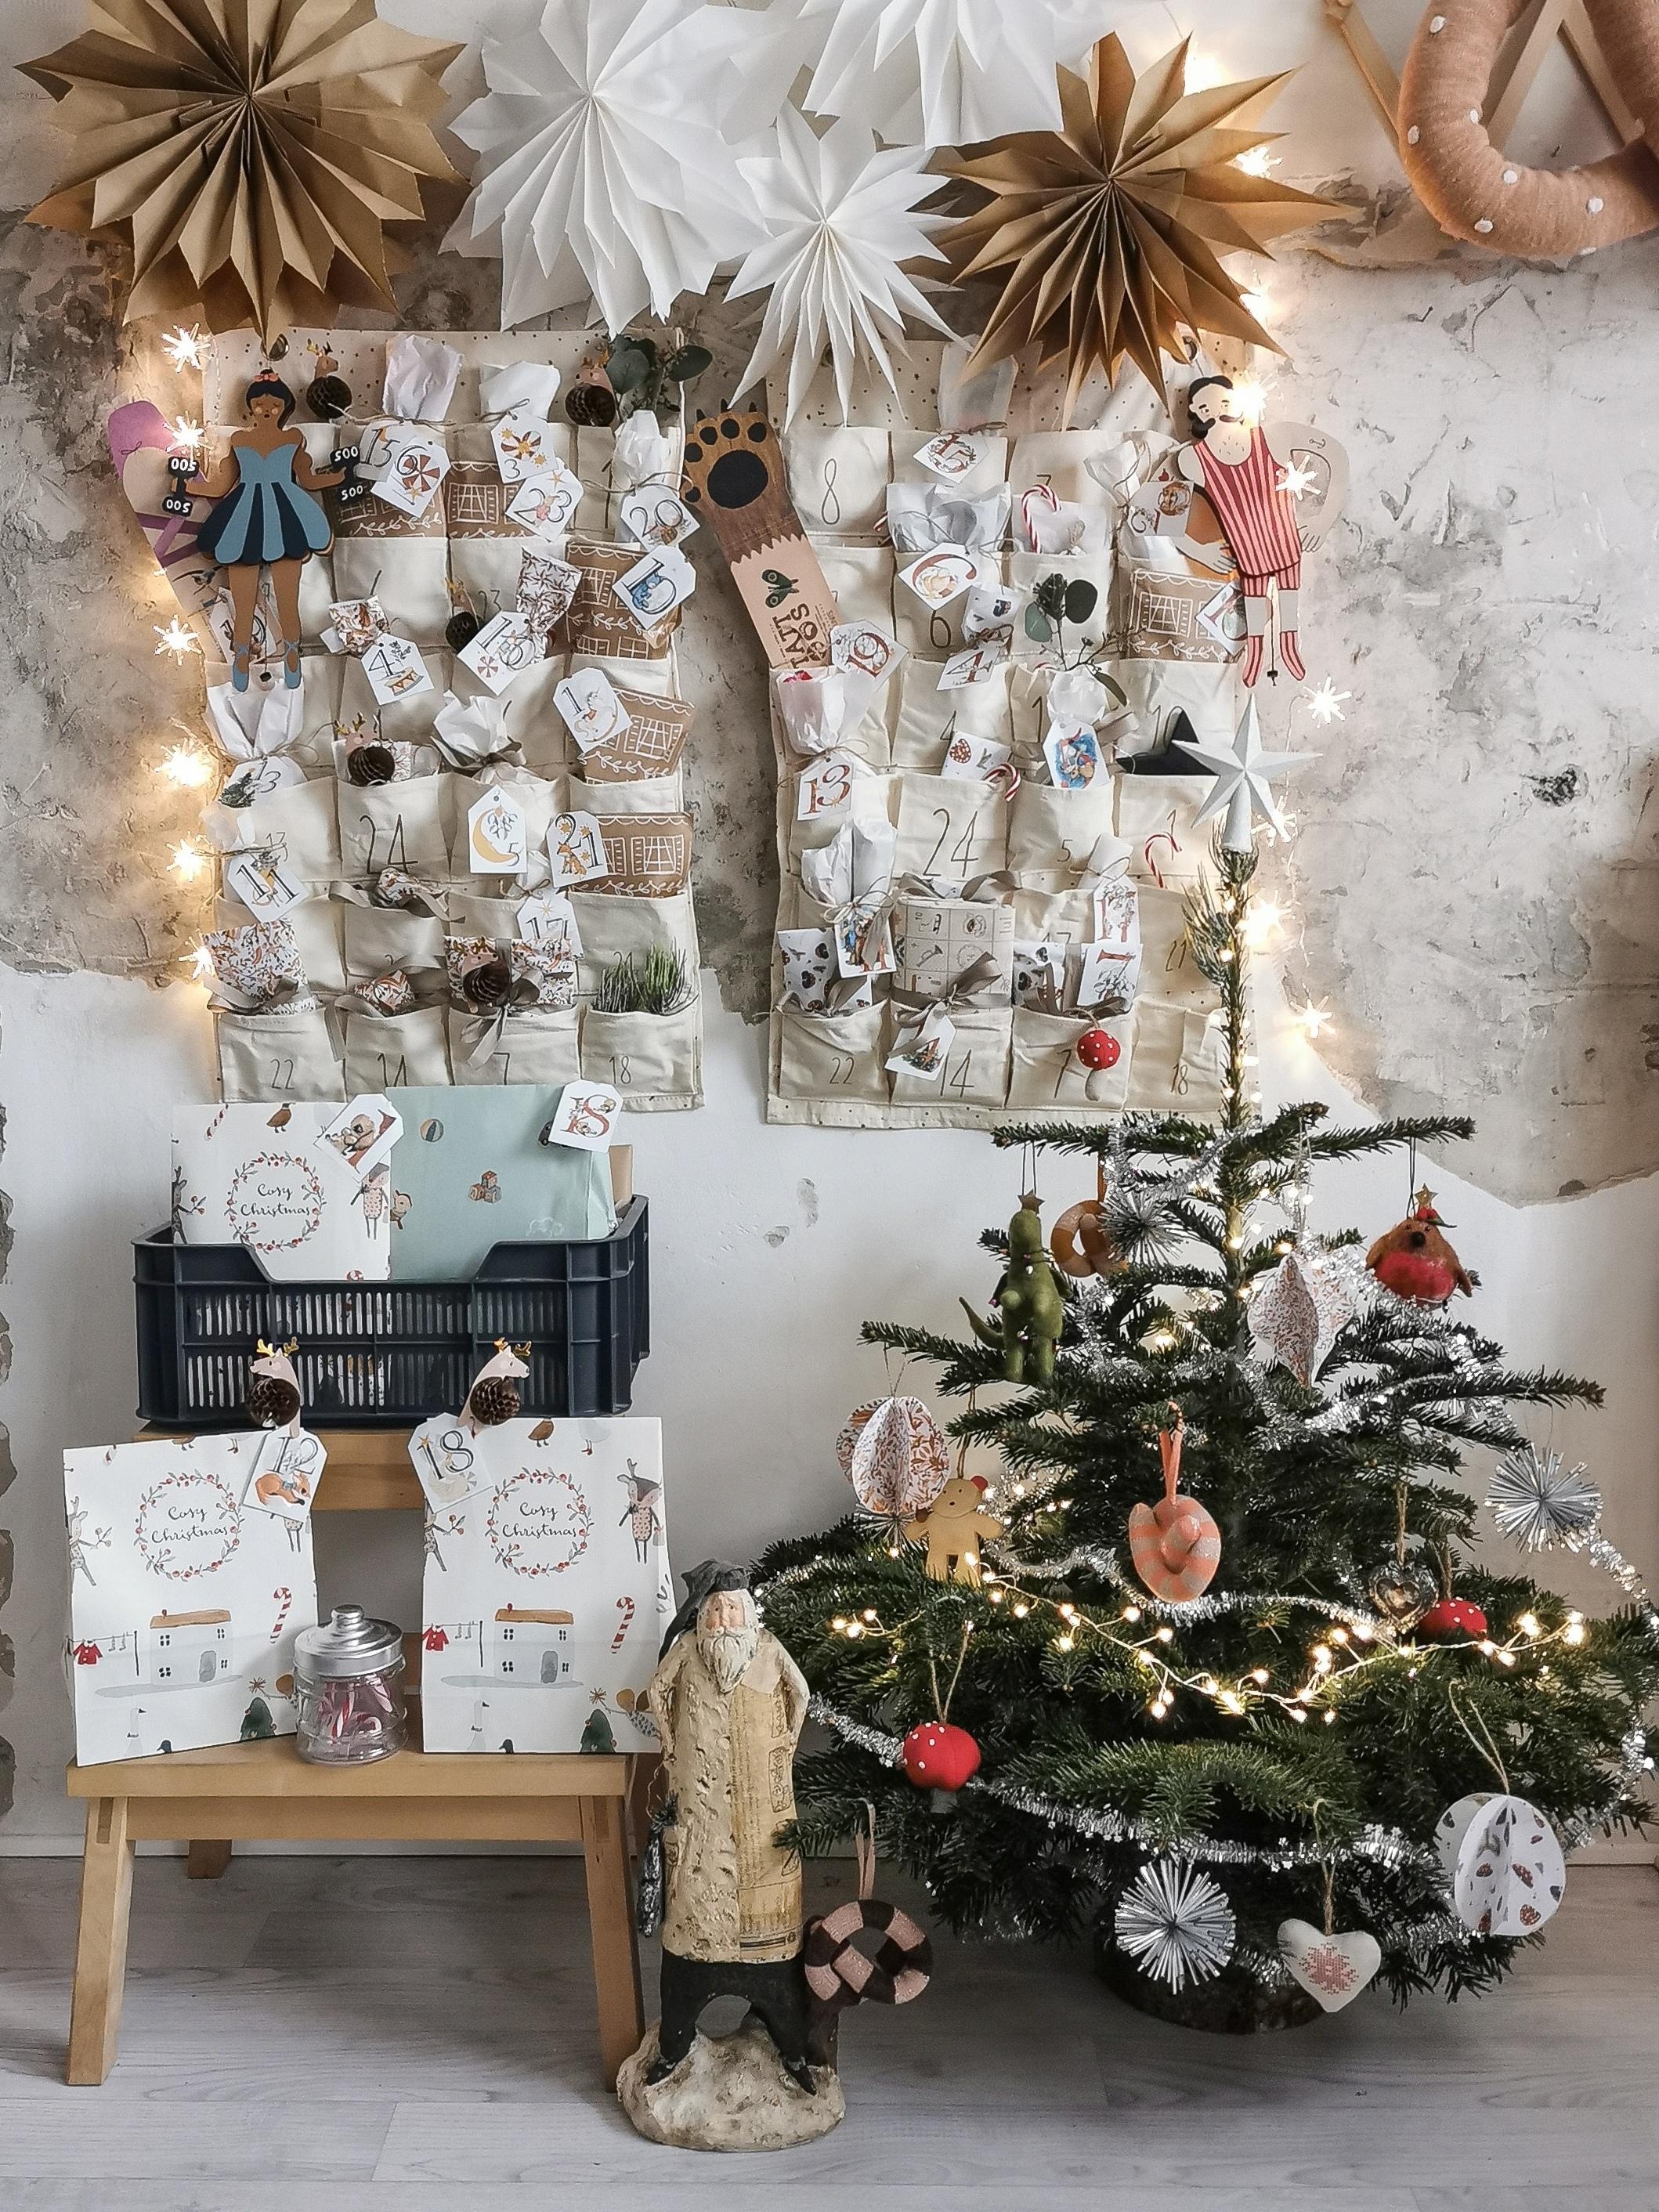 Die #adventskalender der Kinder hängen schonmal und dieses Jahr haben sie sogar einen eigenen kleinen #weihnachtsbaum 